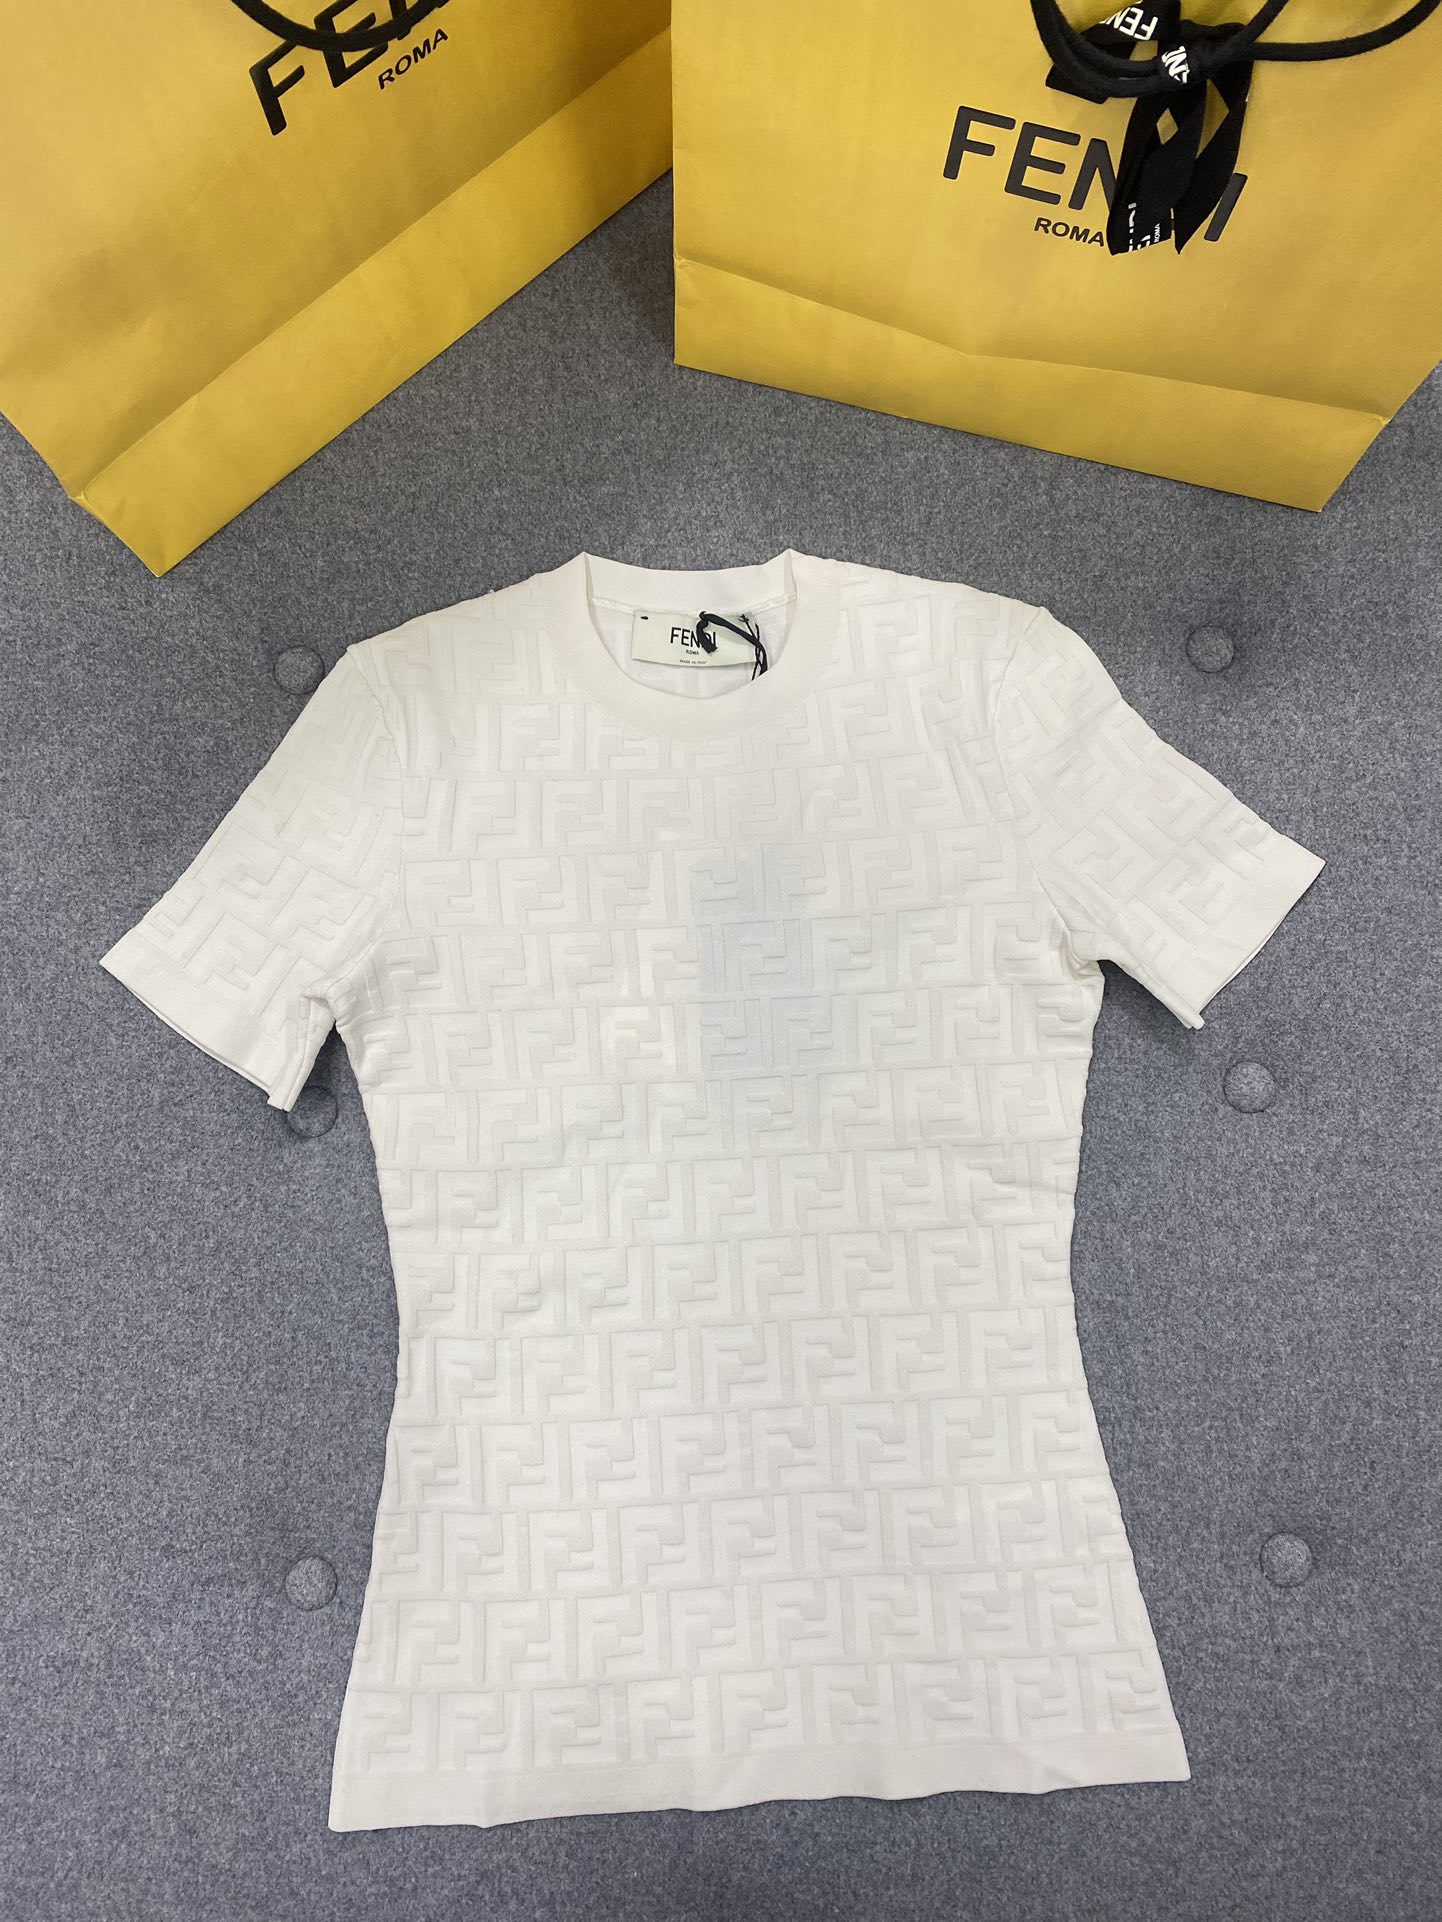 Fendi Kleding Overhemden Beige Wit Breien Polyester Wol Zomercollectie